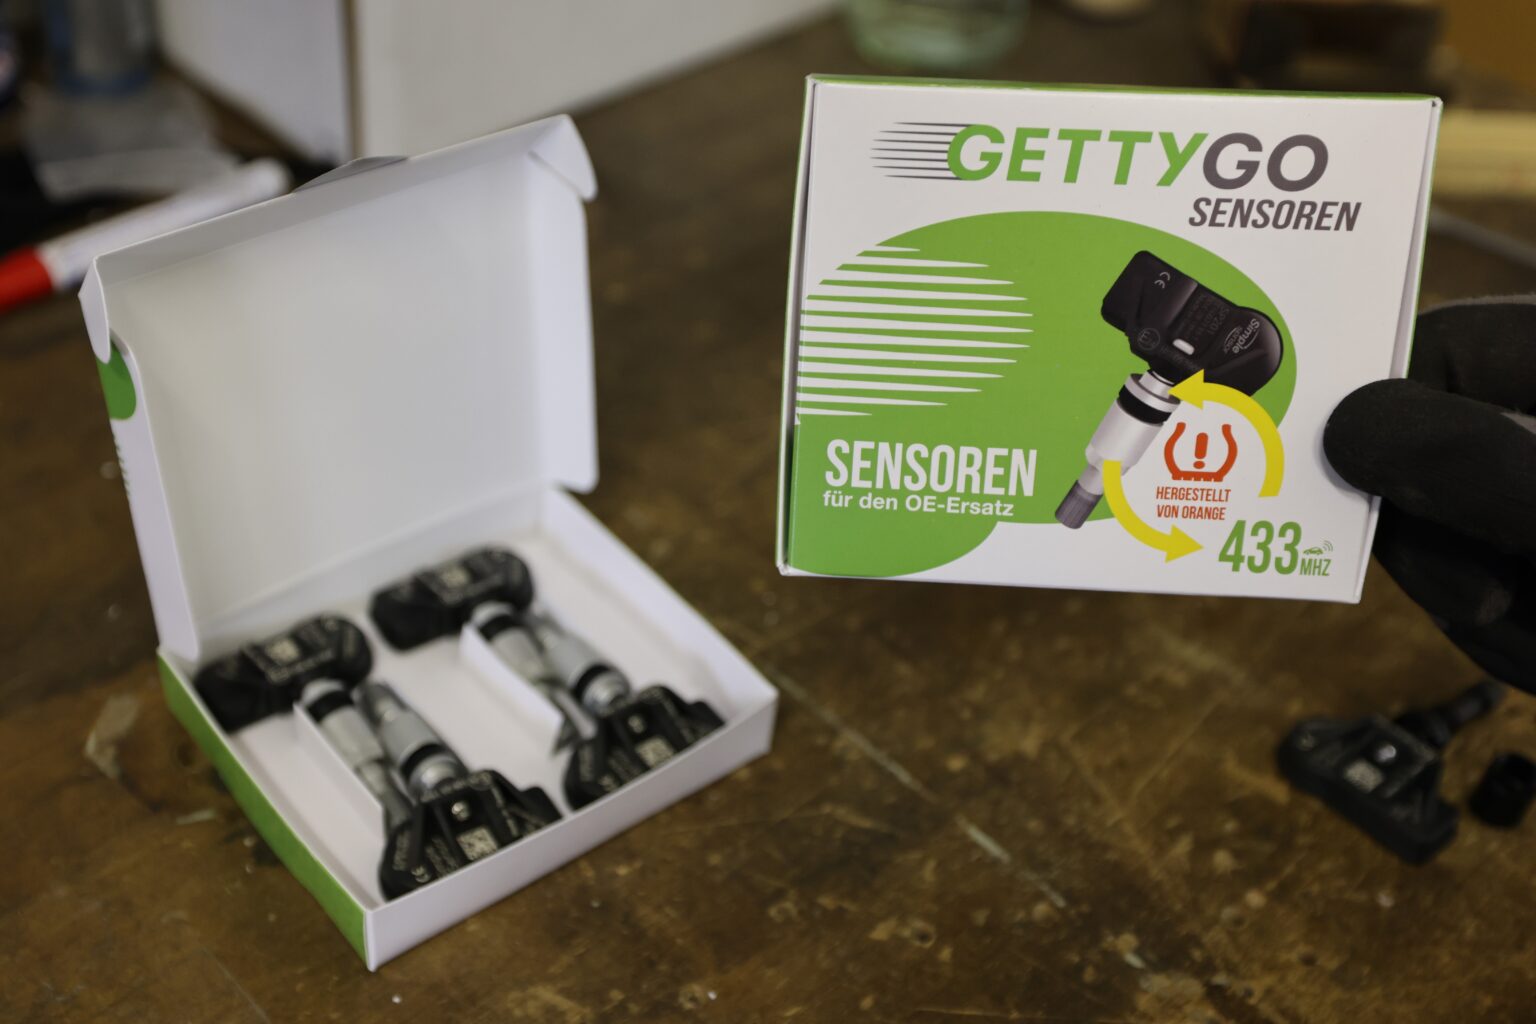 GETTYGO-Sensoren (hergestellt von Orange)